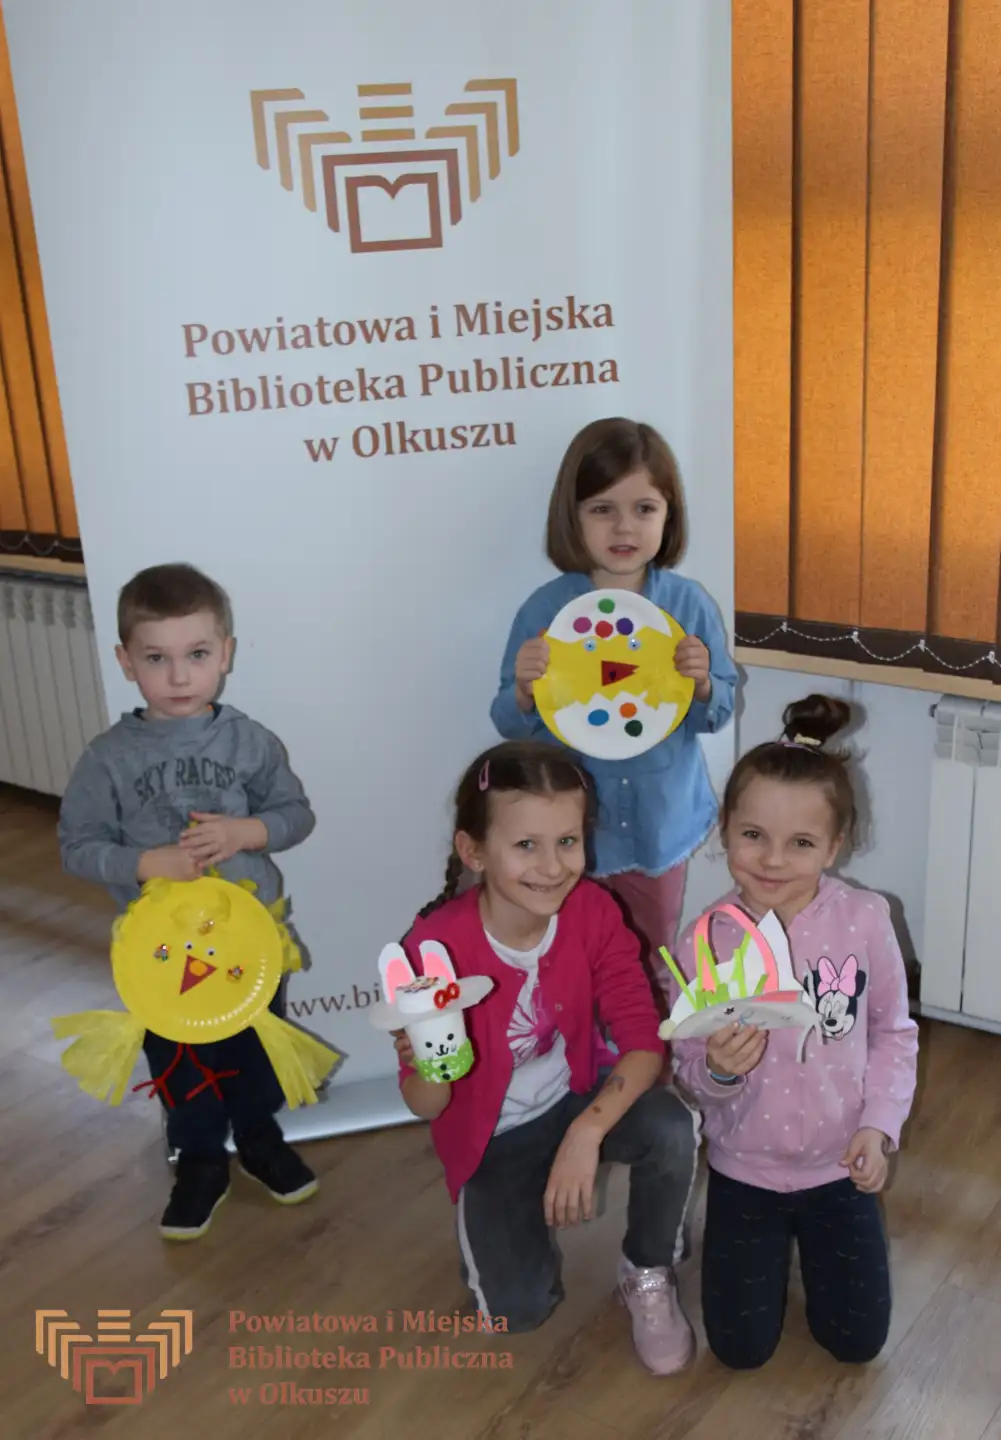 Czwórka dzieci stoi przed szyldem PiMBP w Olkuszu i pozuje do zdjęcia. Dzieci trzymają samodzielnie zrobione prace plastyczne nawiązujące do Wielkanocy.